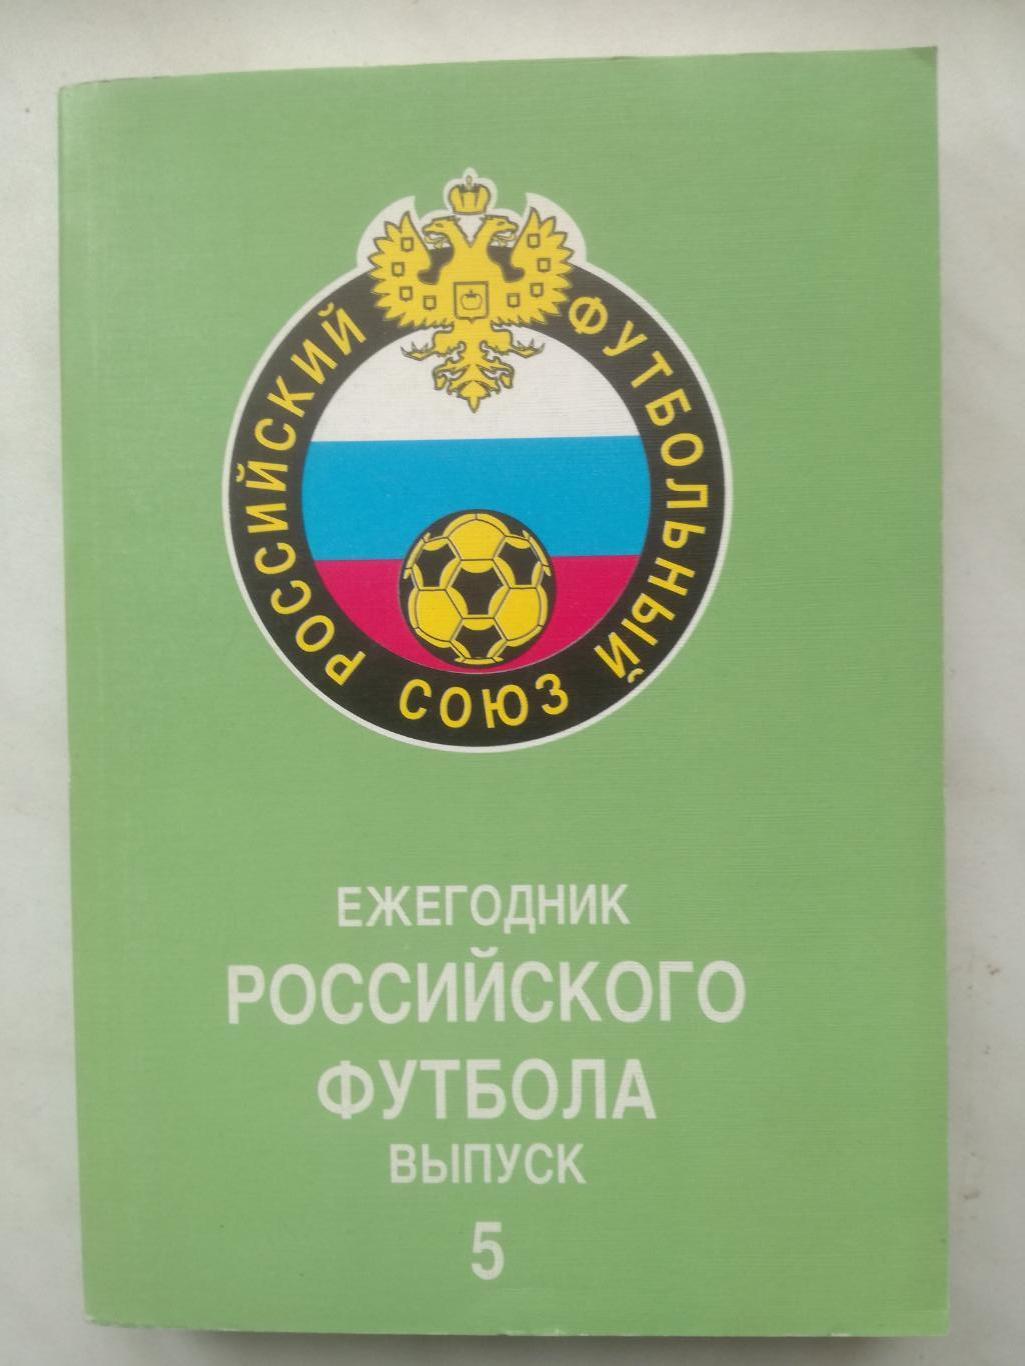 Ежегодник Российского футбола №5. Итоги 1996 (издание 1997)